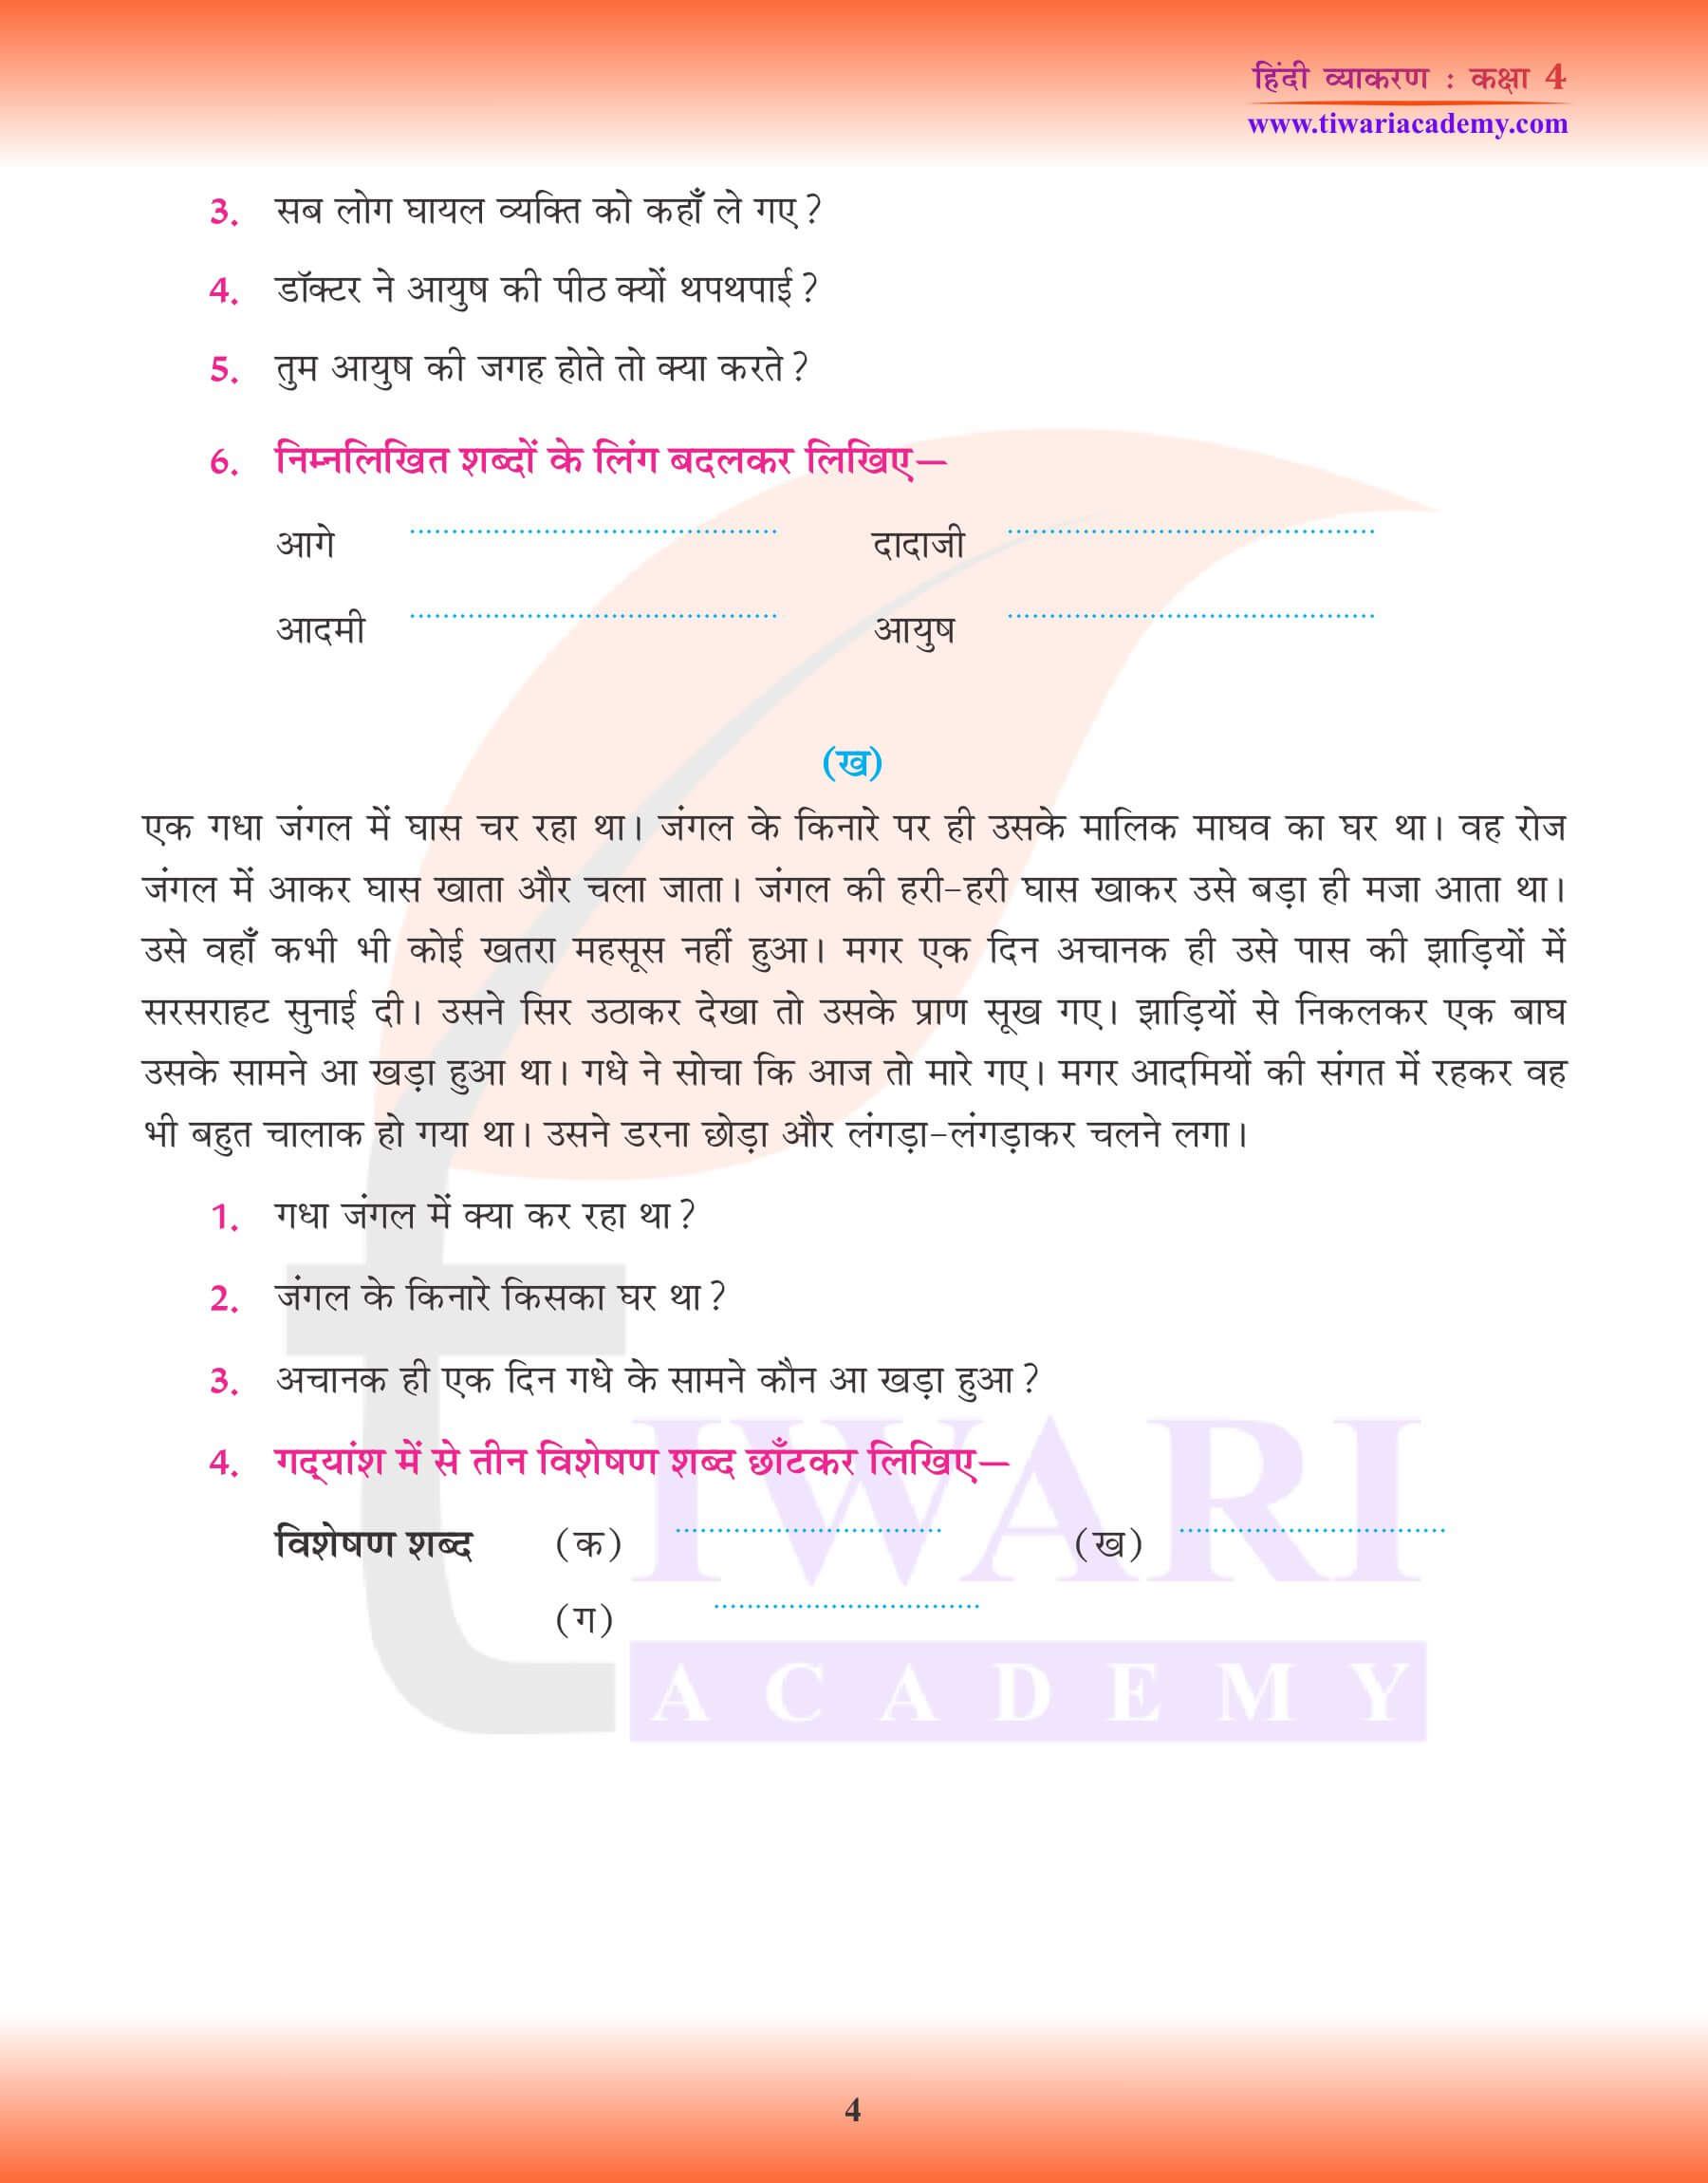 कक्षा 4 हिंदी व्याकरण में अपठित गद्यांश के प्रश्न